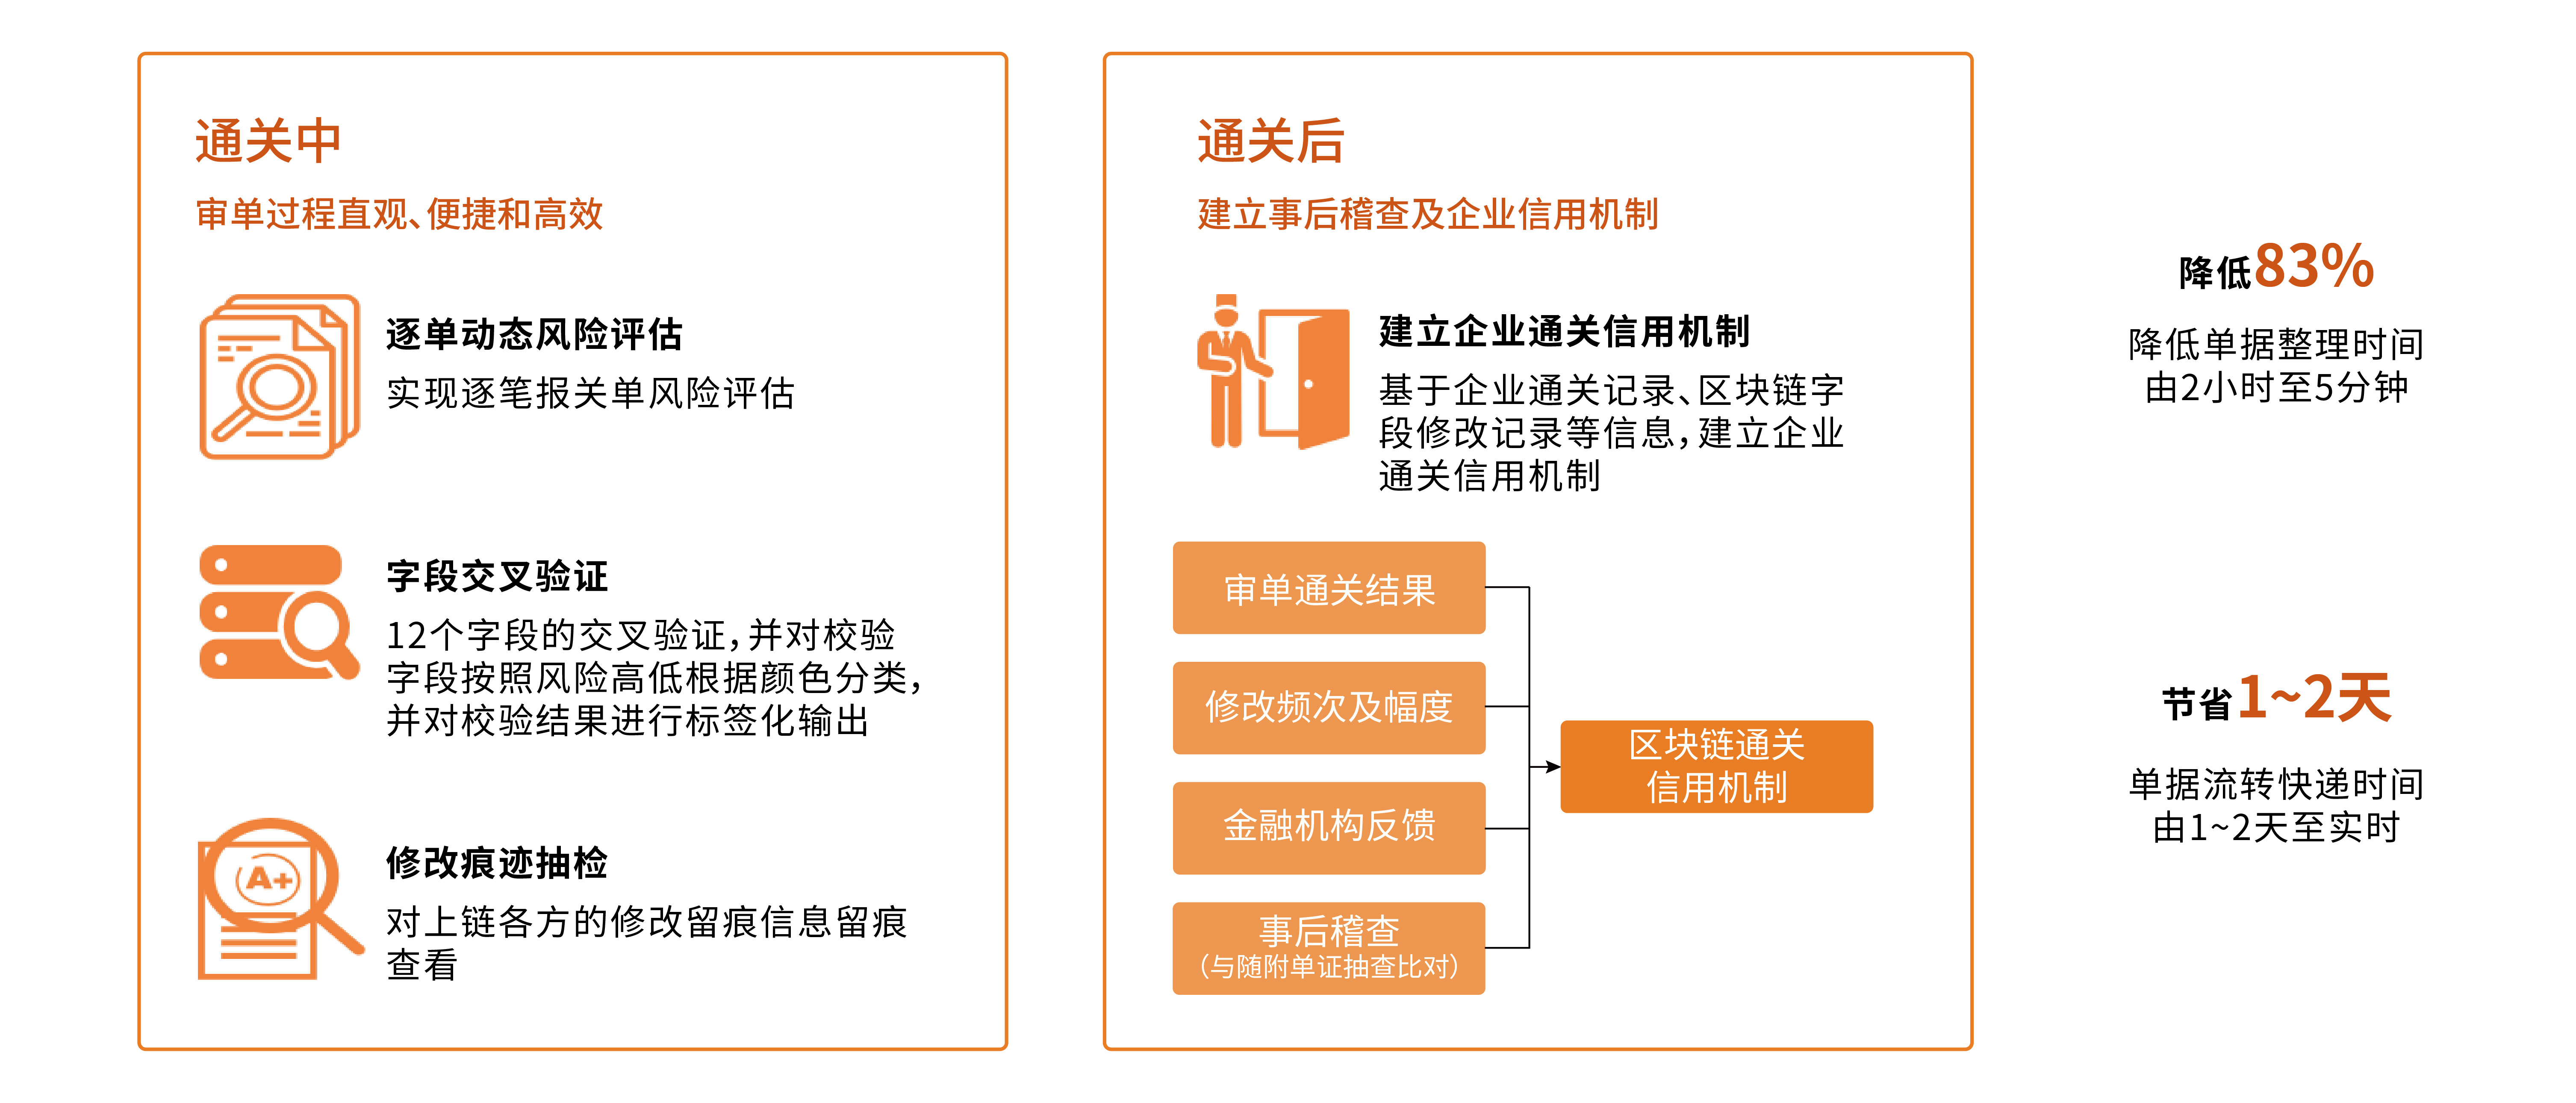 天津口岸跨境贸易区块链平台-02.jpg